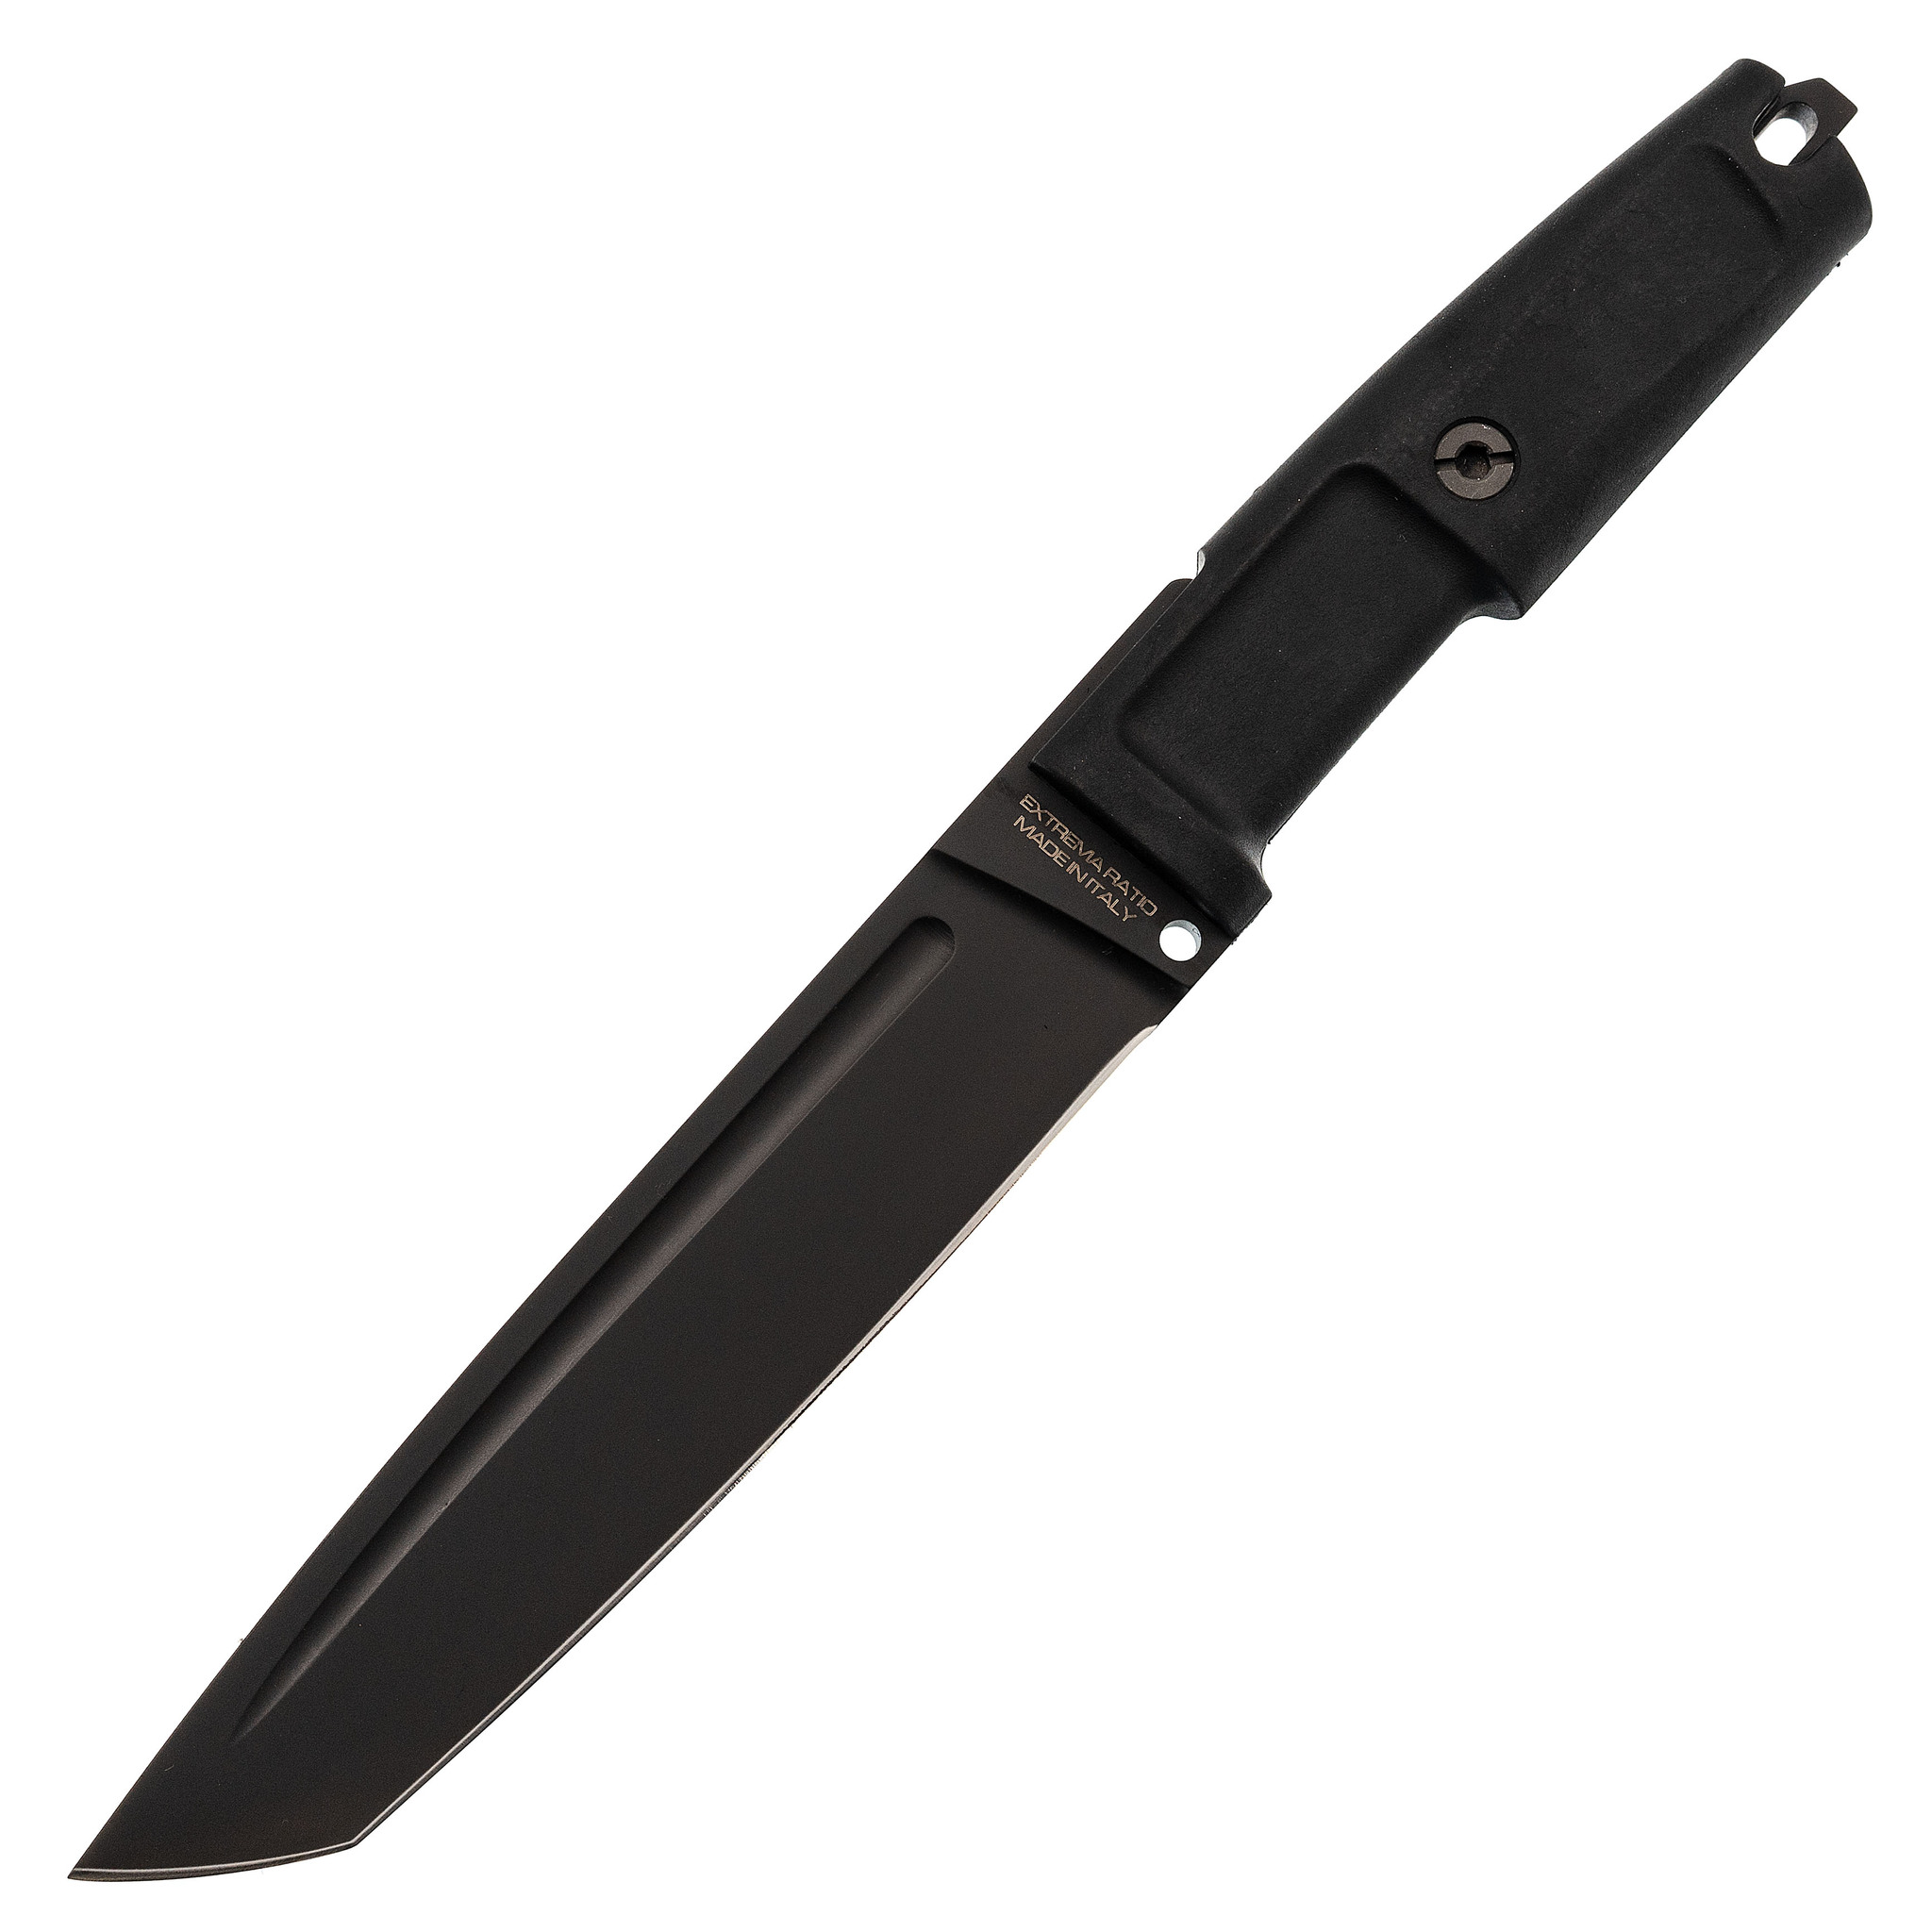 Нож с фиксированным клинком Extrema Ratio T4000 S Black, сталь Bhler N690, рукоять пластик